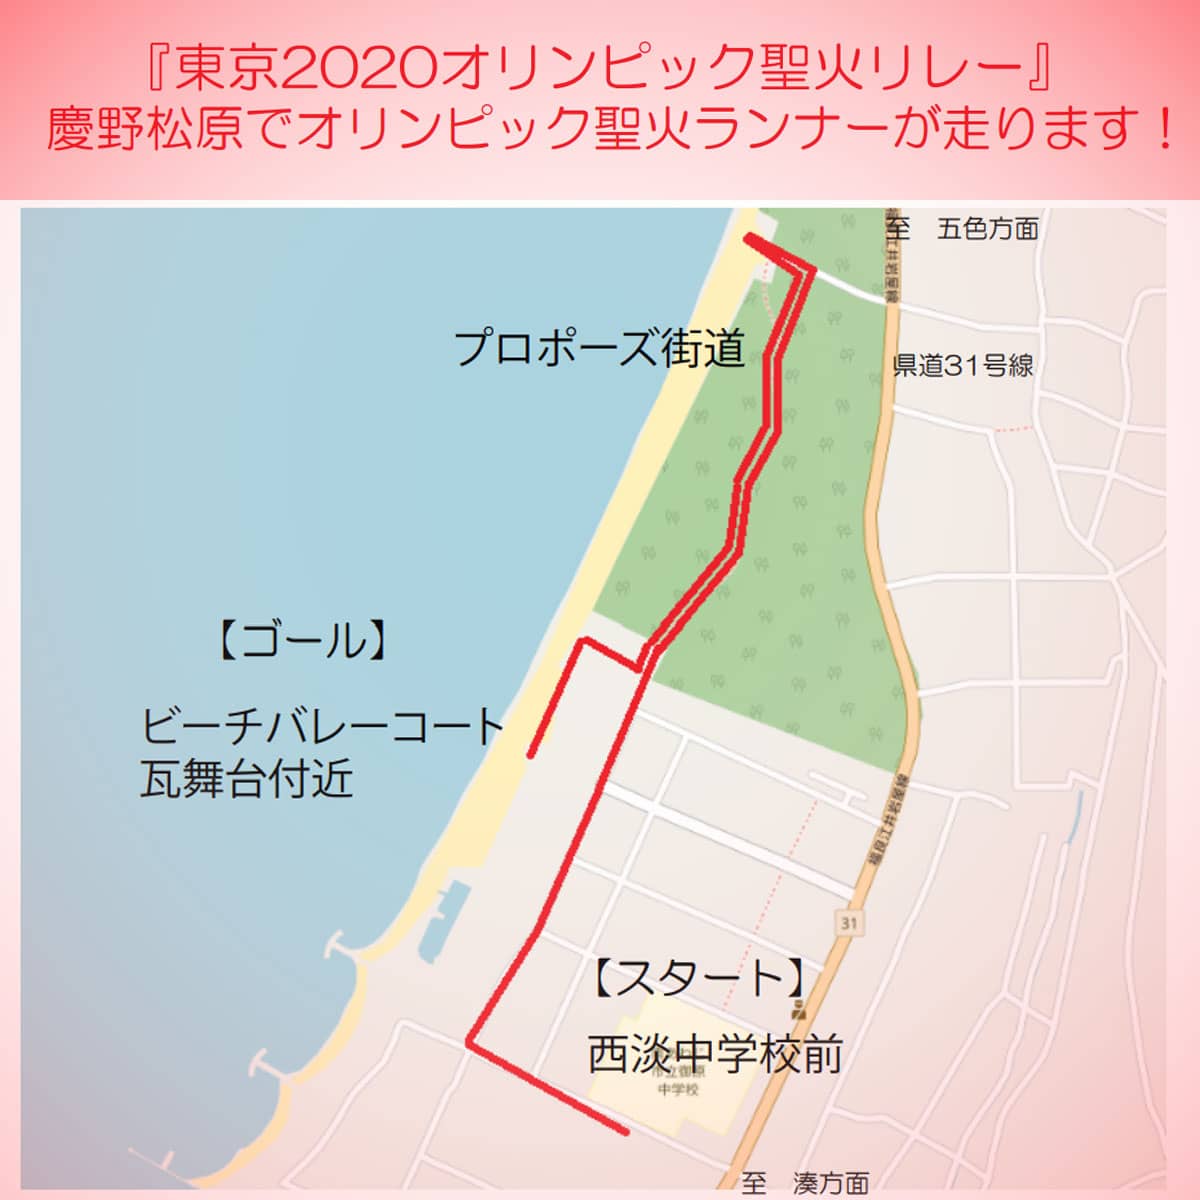 淡路島聖火リレー開催中止 東京オリンピック 慶野松原 アワタビ